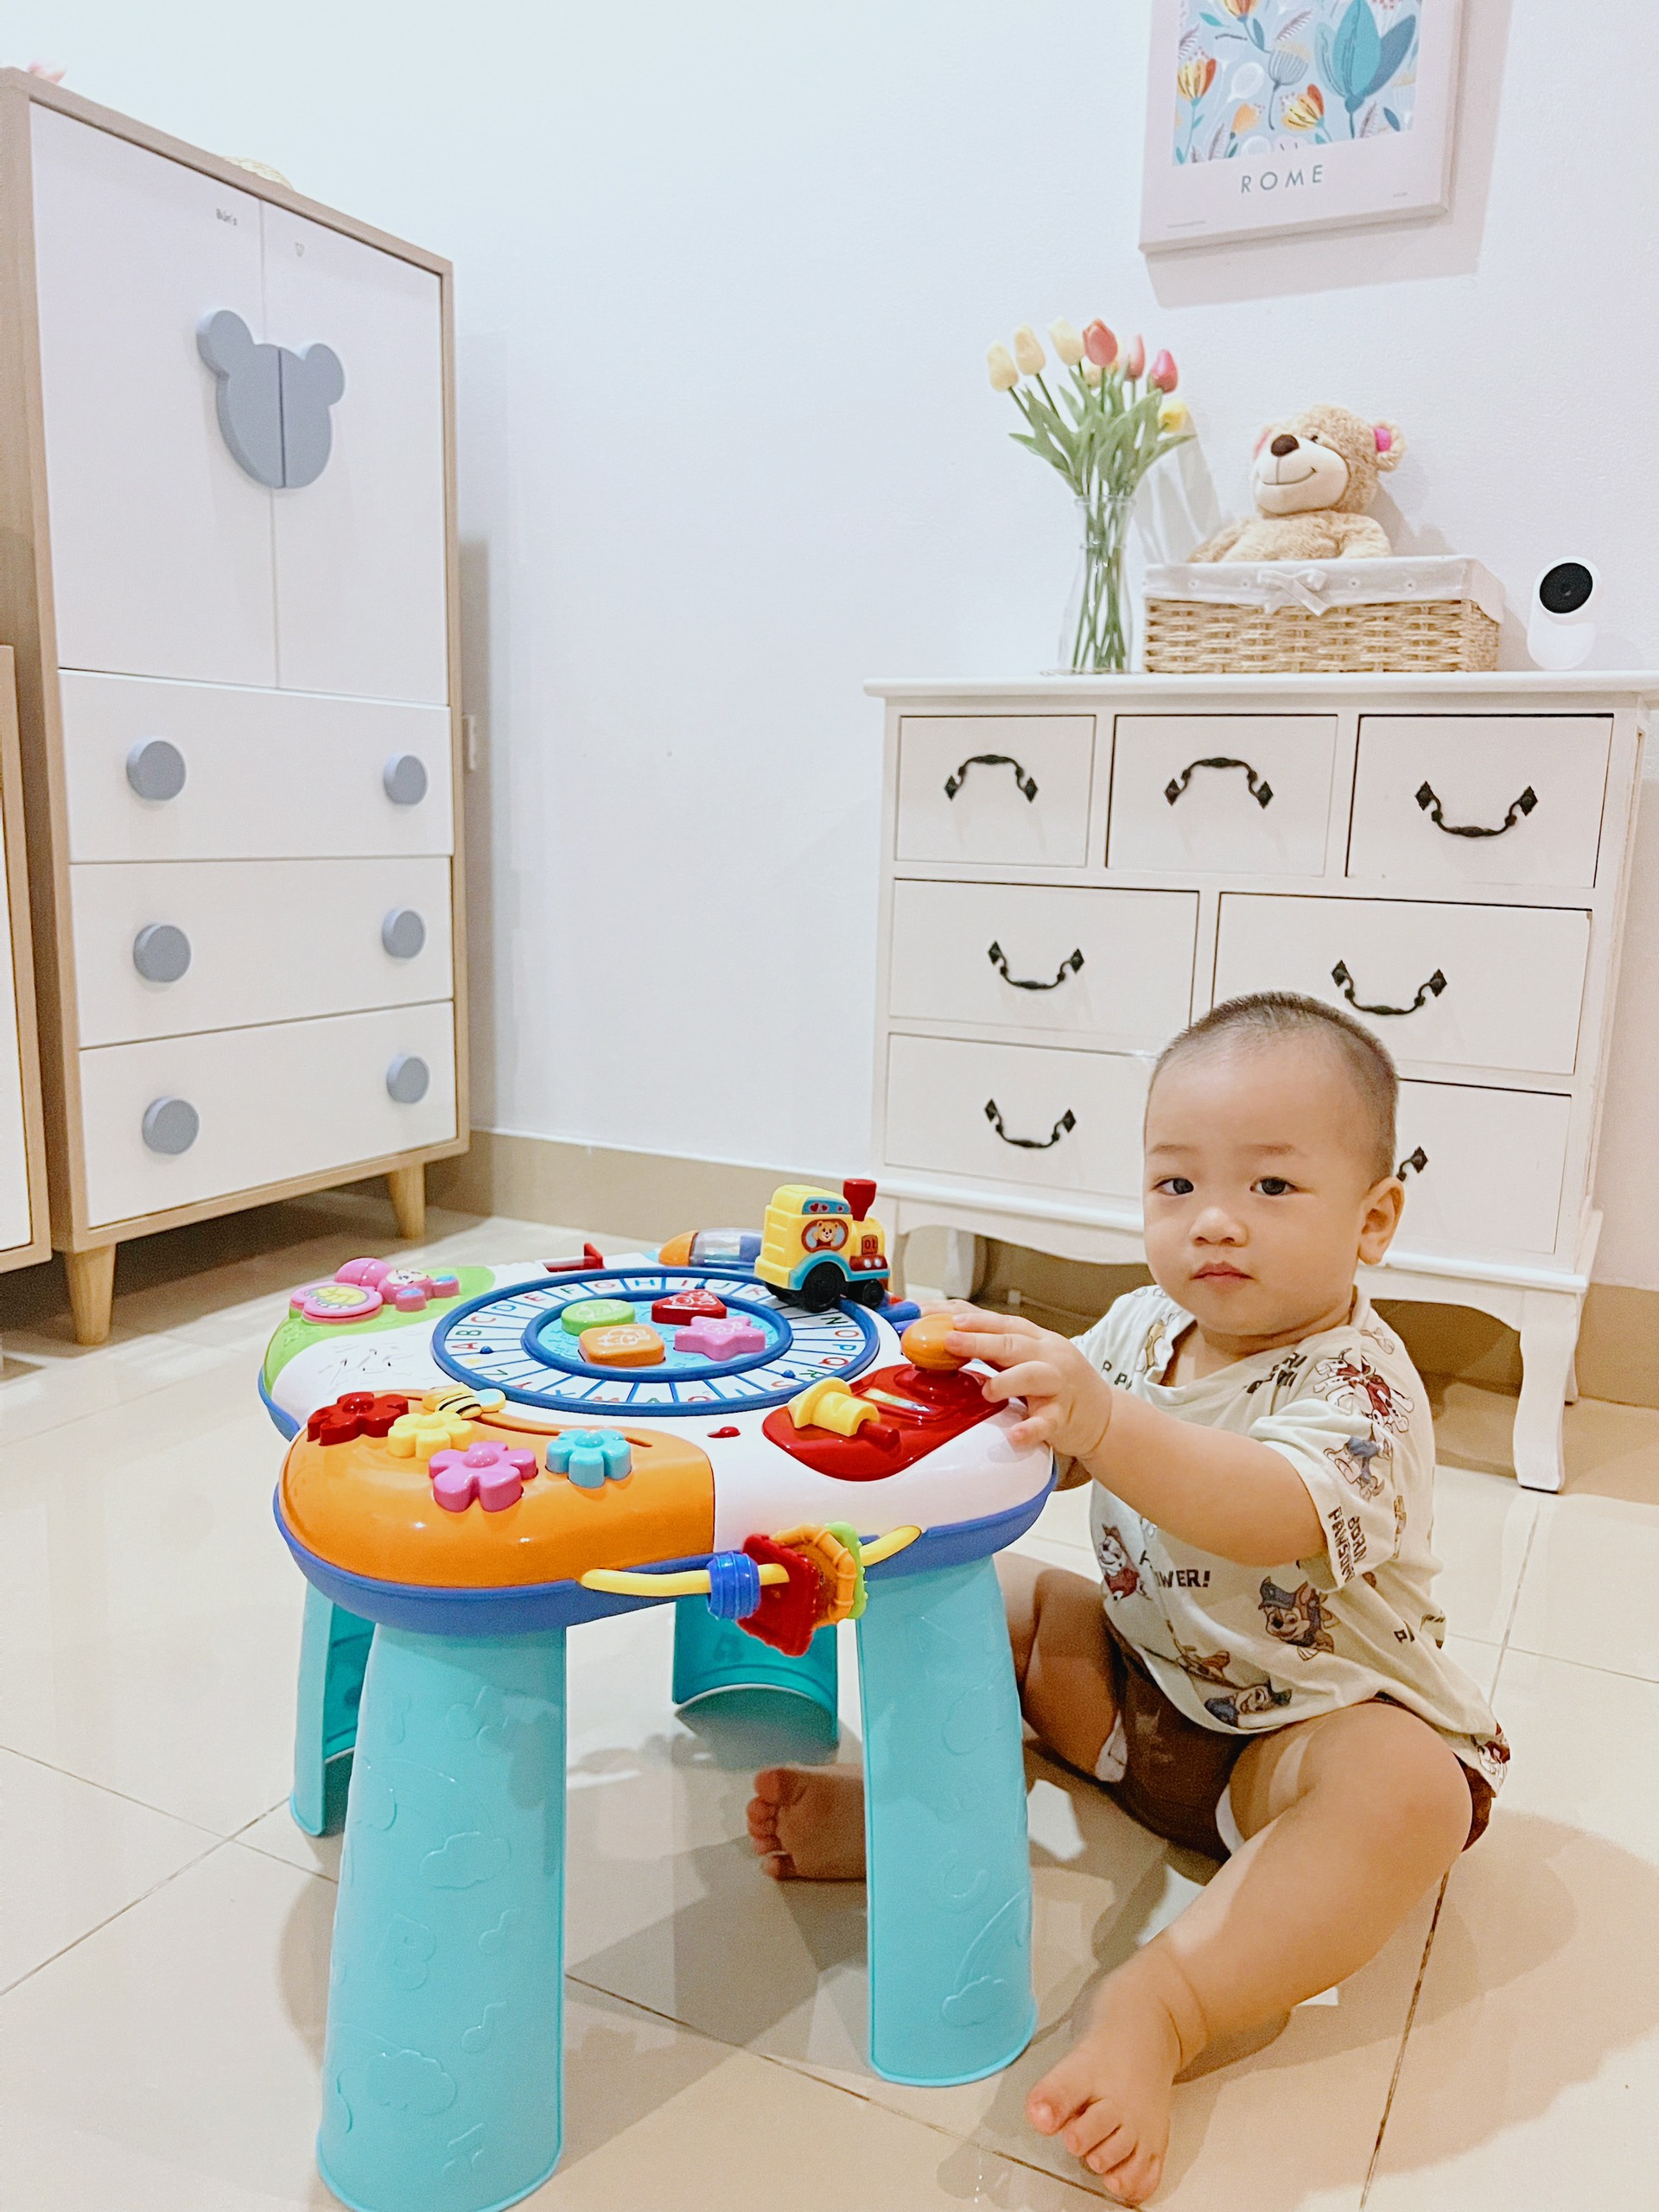 Bàn nhạc cho bé - tập đứng - học chữ - đồ chơi có nhạc 0801 hiệu Winfun giúp bé vừa chơi vừa học, phát triển kỹ năng